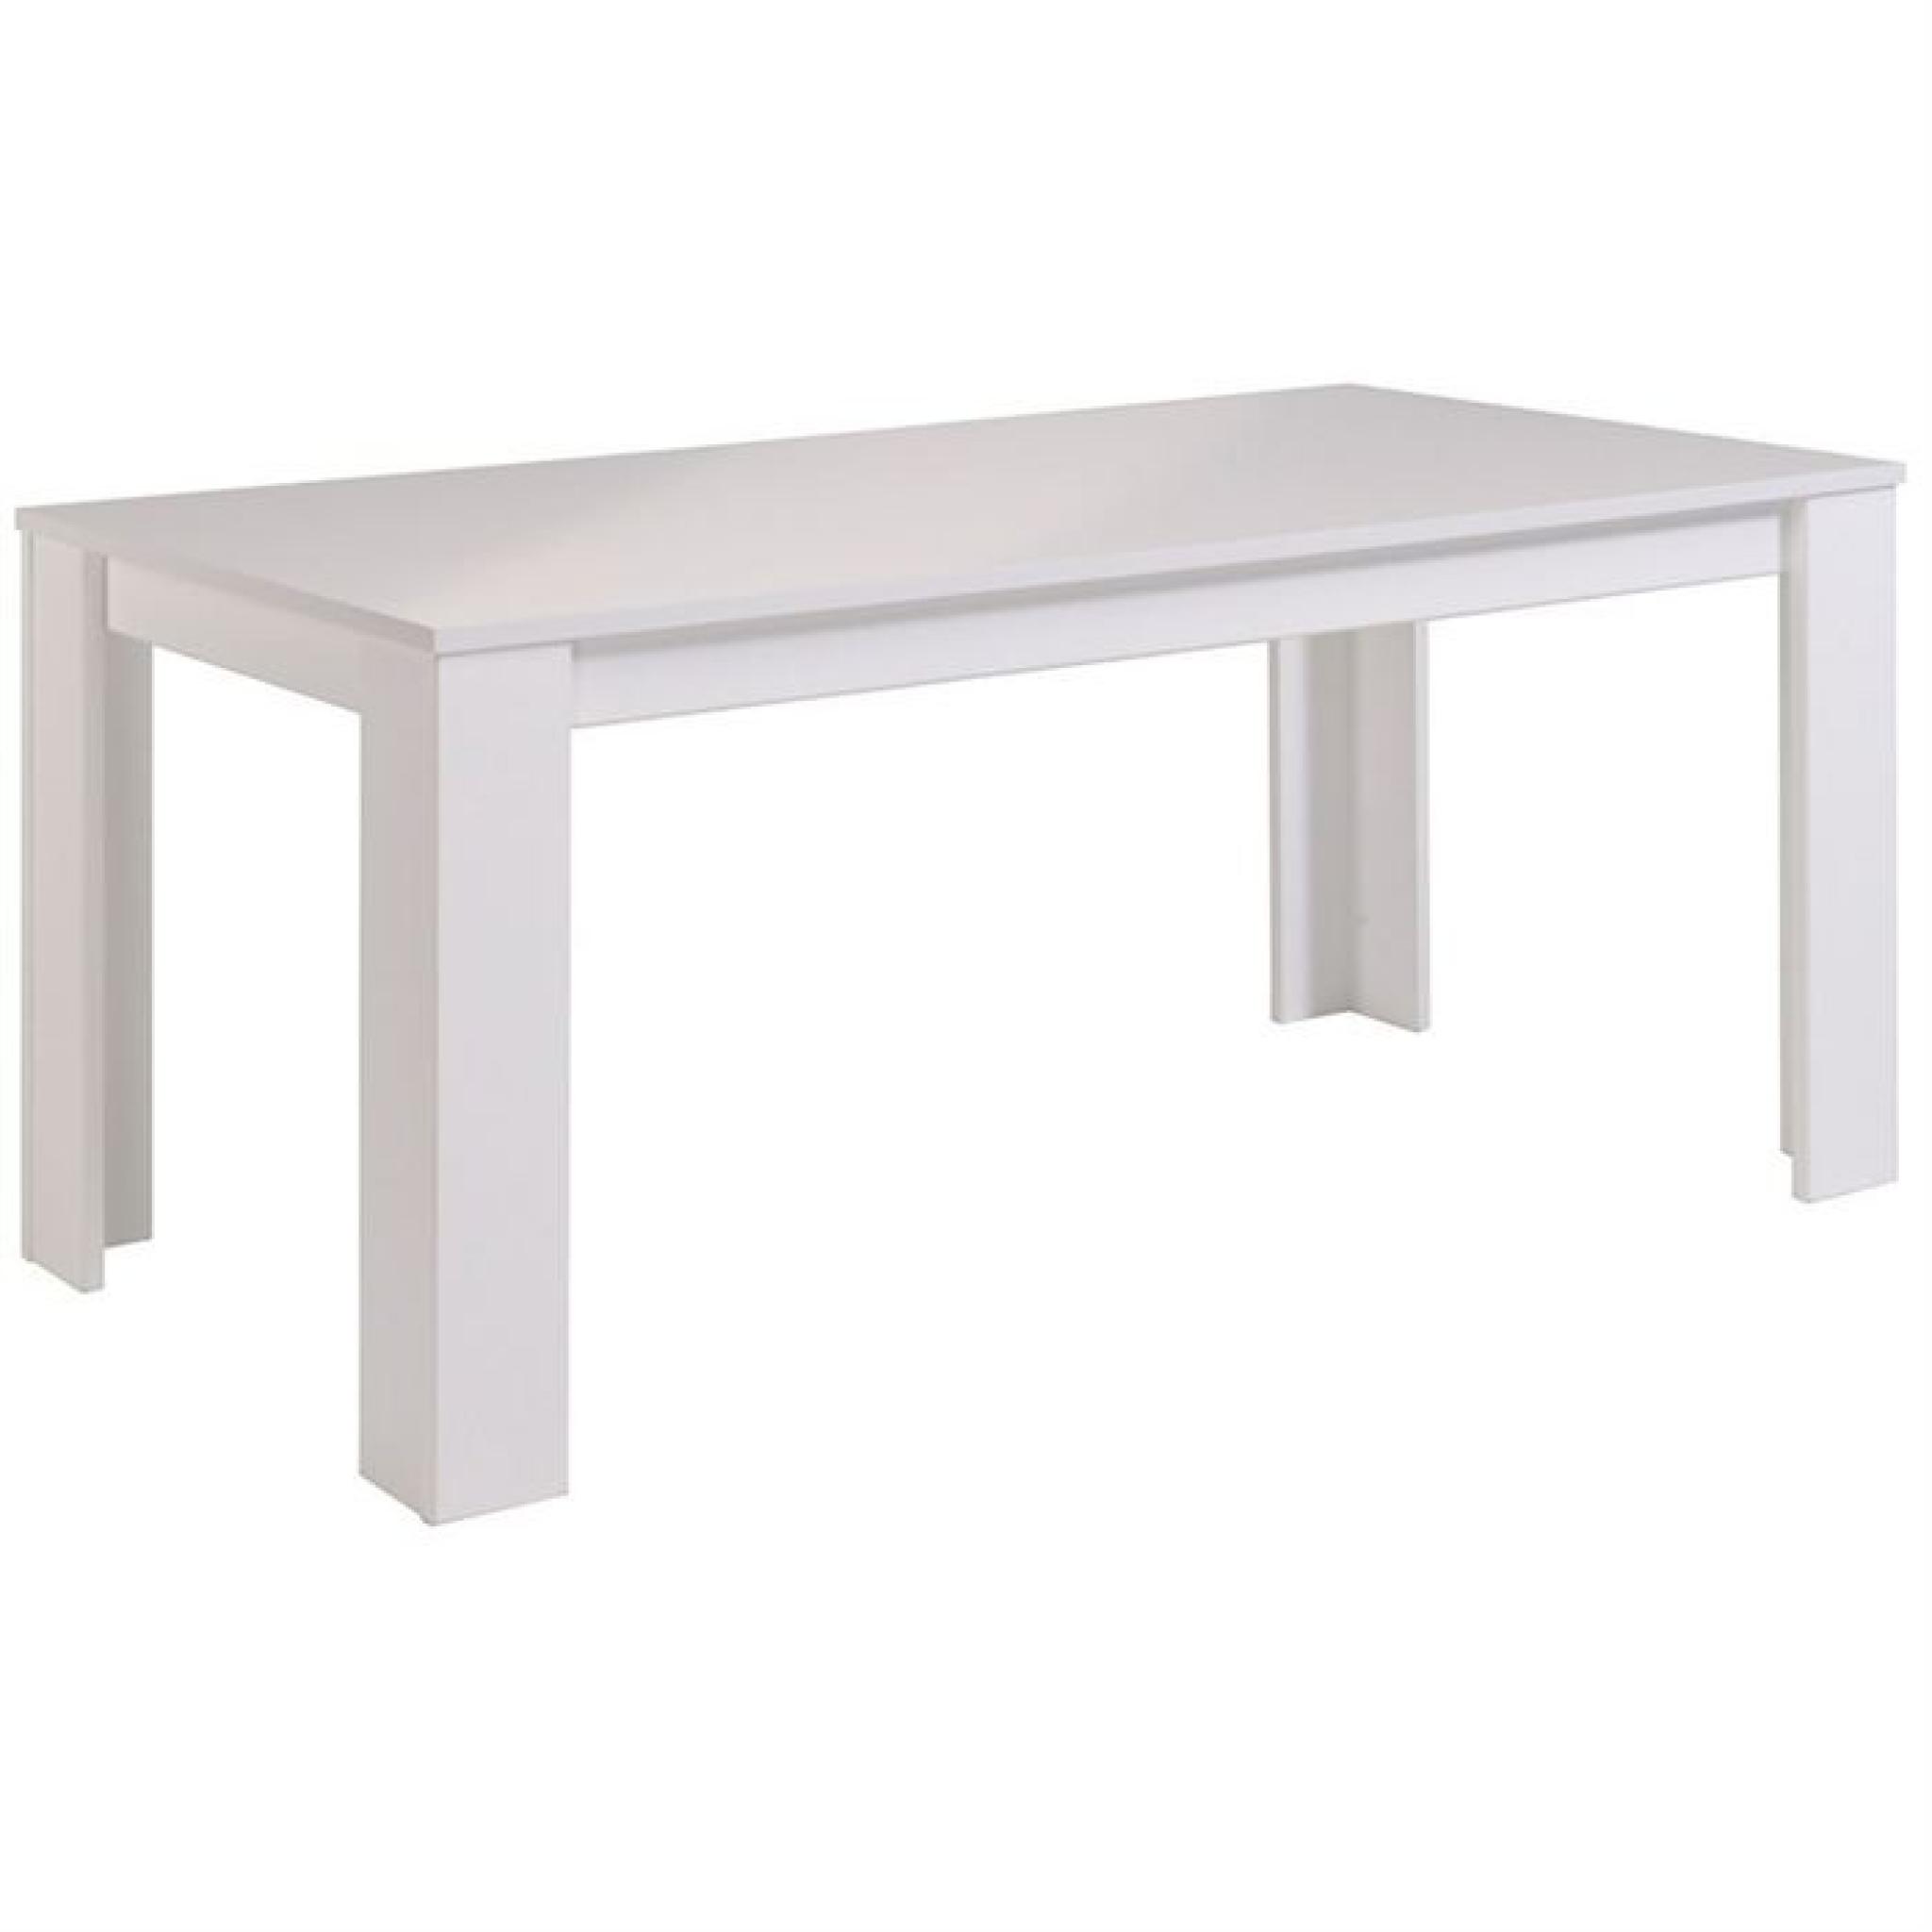 STREET Table à manger 170 cm blanc brillant pas cher